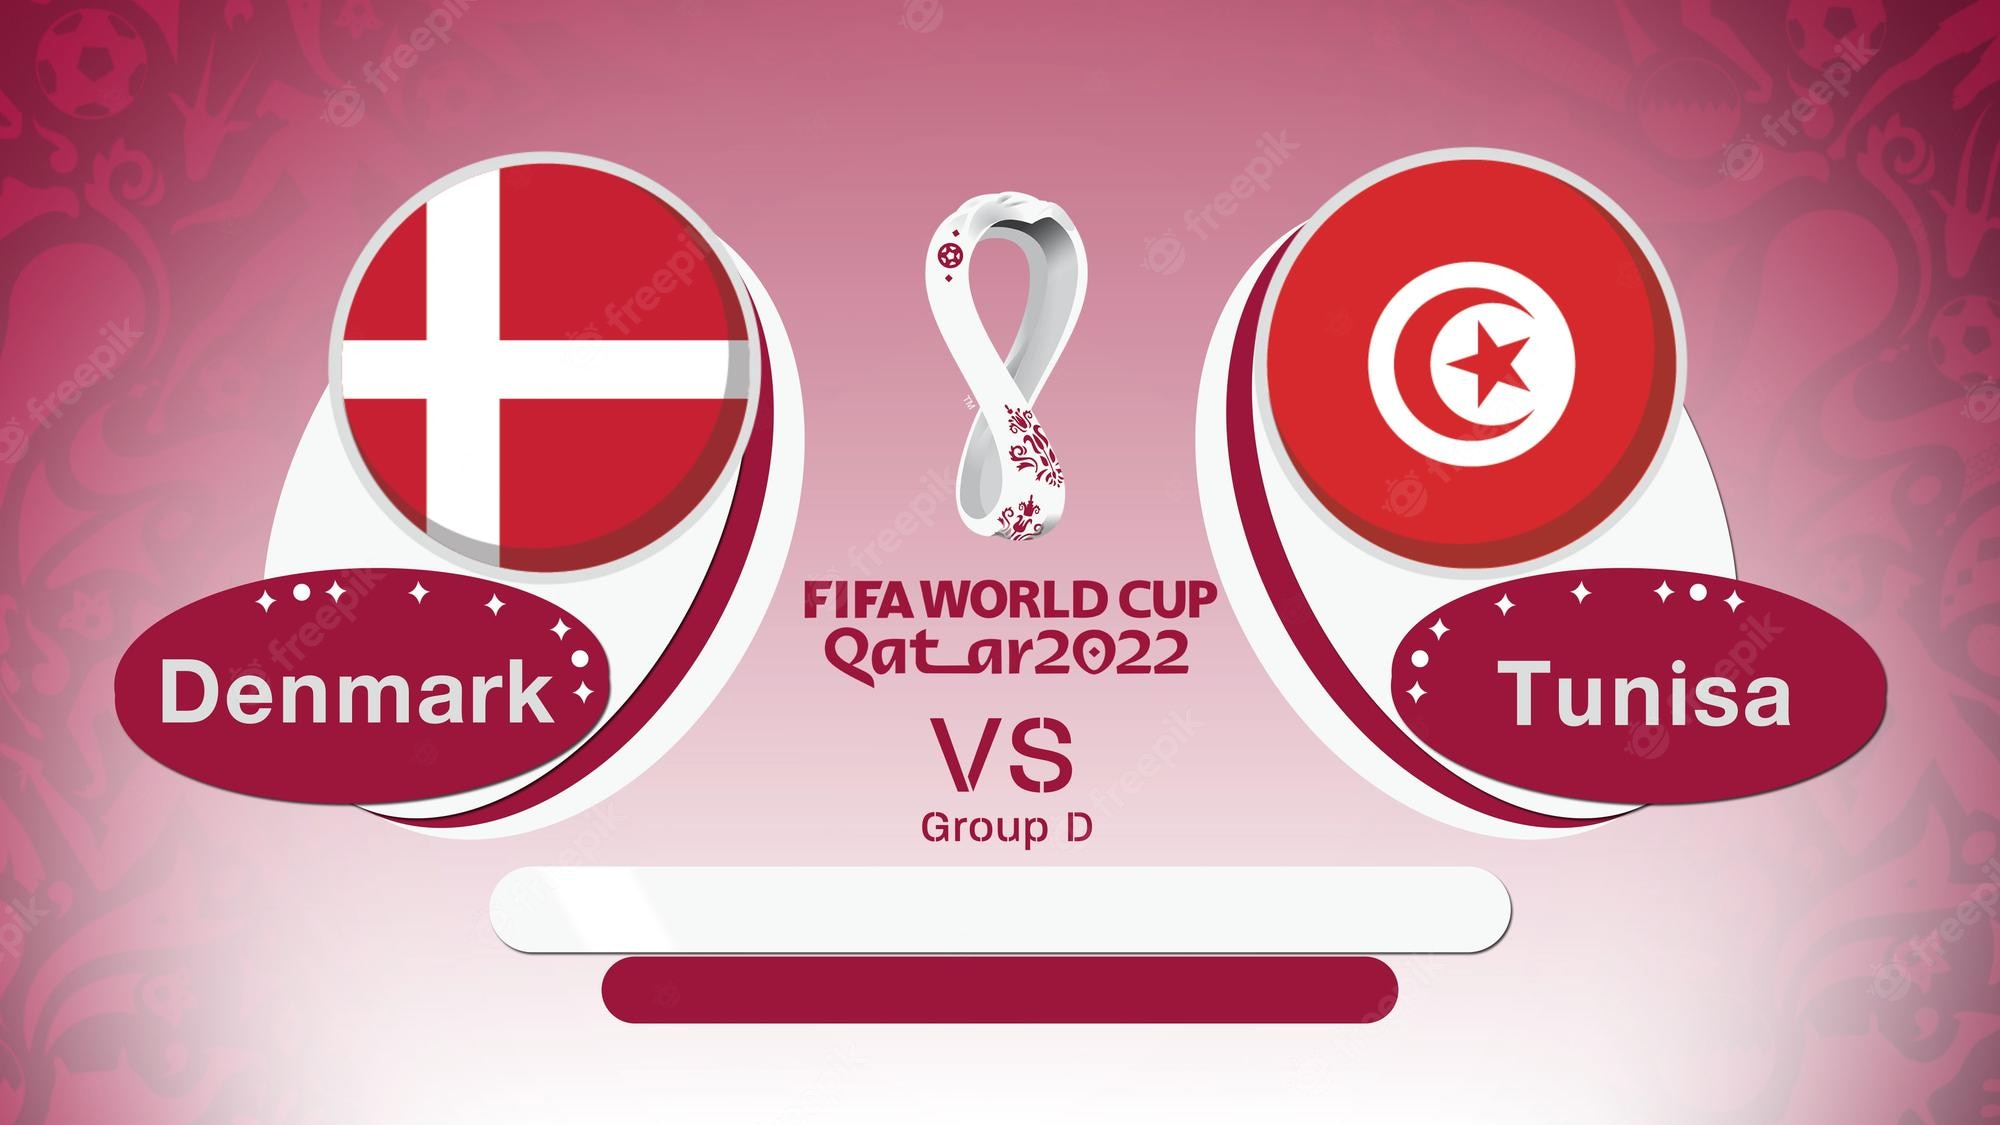 denmark vs tunisia fifa world cup 2022 qatar group d 327072 3067 1